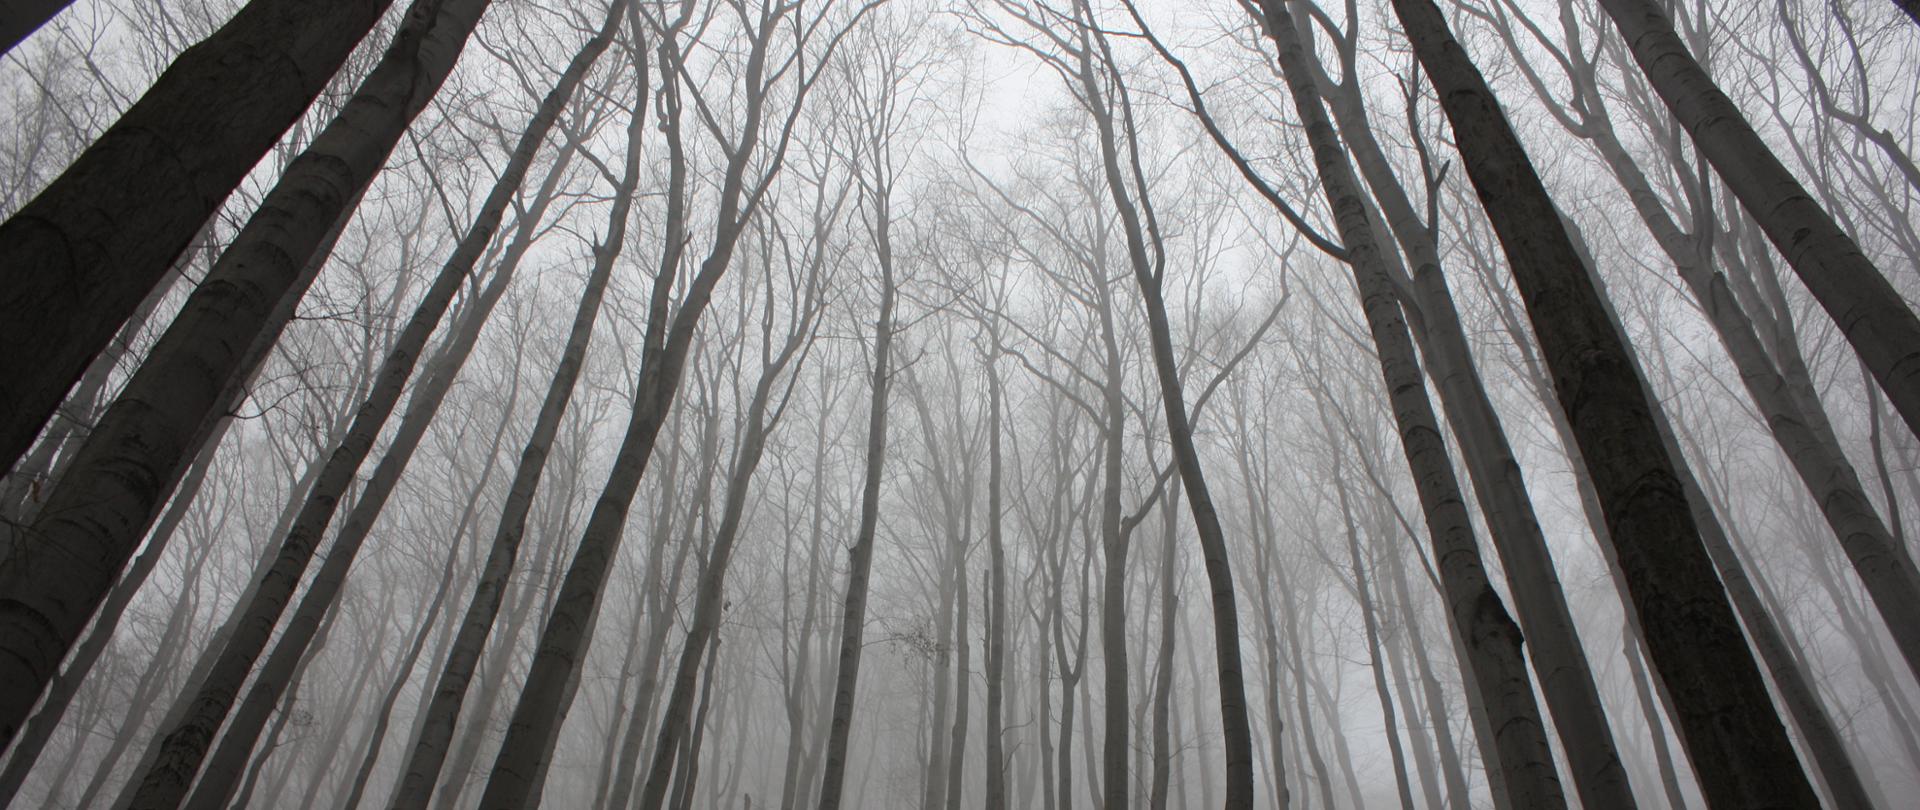 Zdjęcie przedstawia las zimą, bez liści na drzewach